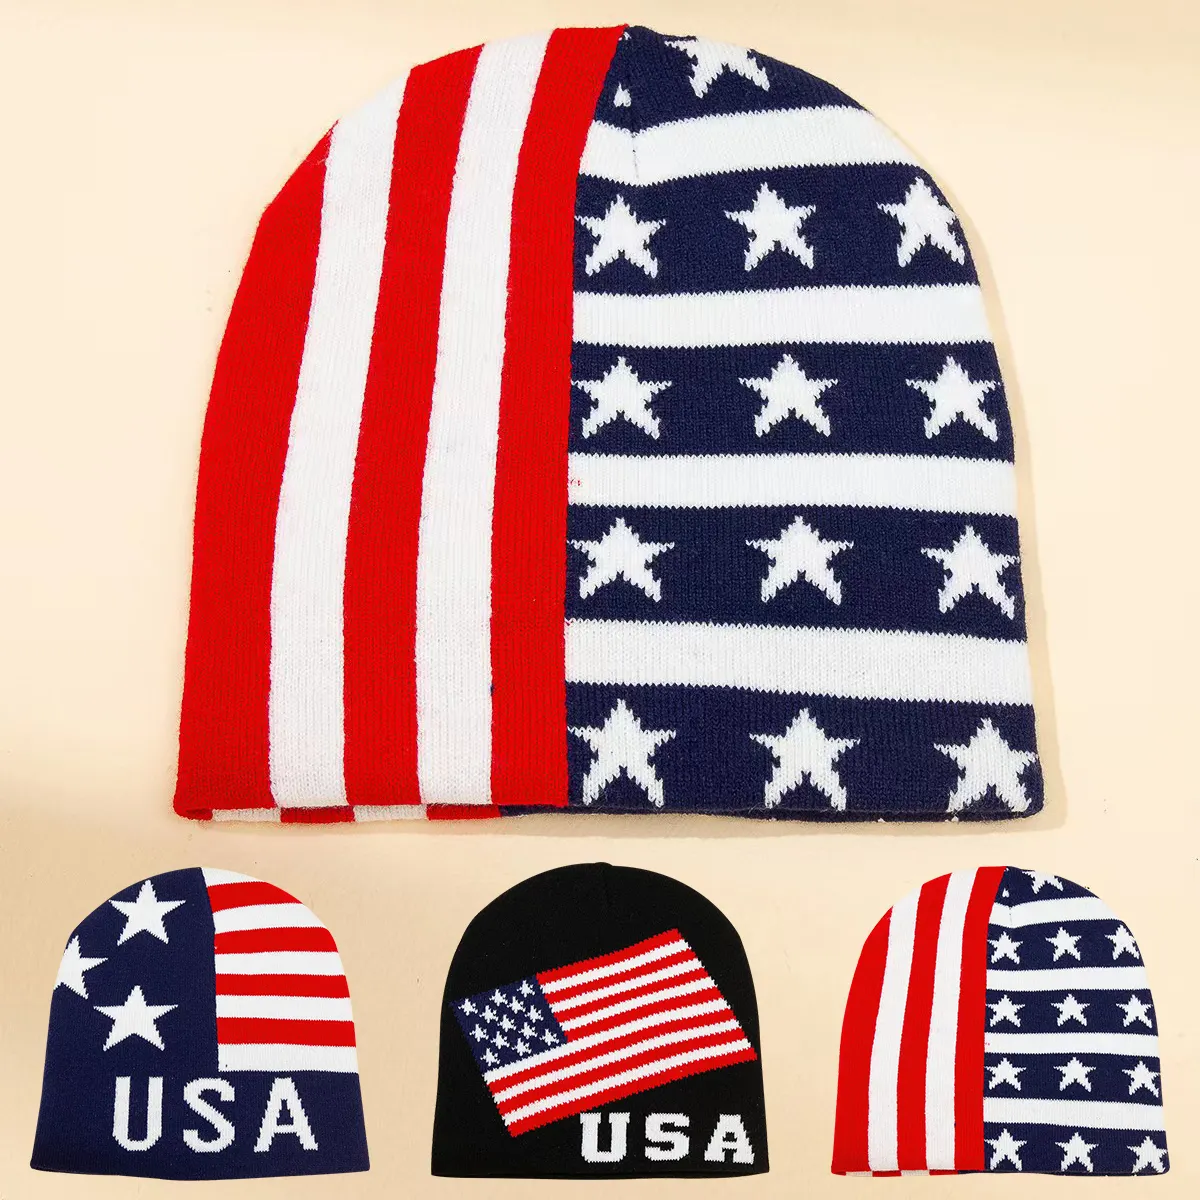 אופנה הסיטונאי עבה jquard עבה אוזה אותיות beanies כובע סקי עם דגל אמריקה כוכבים דפוס Beanhat החורף